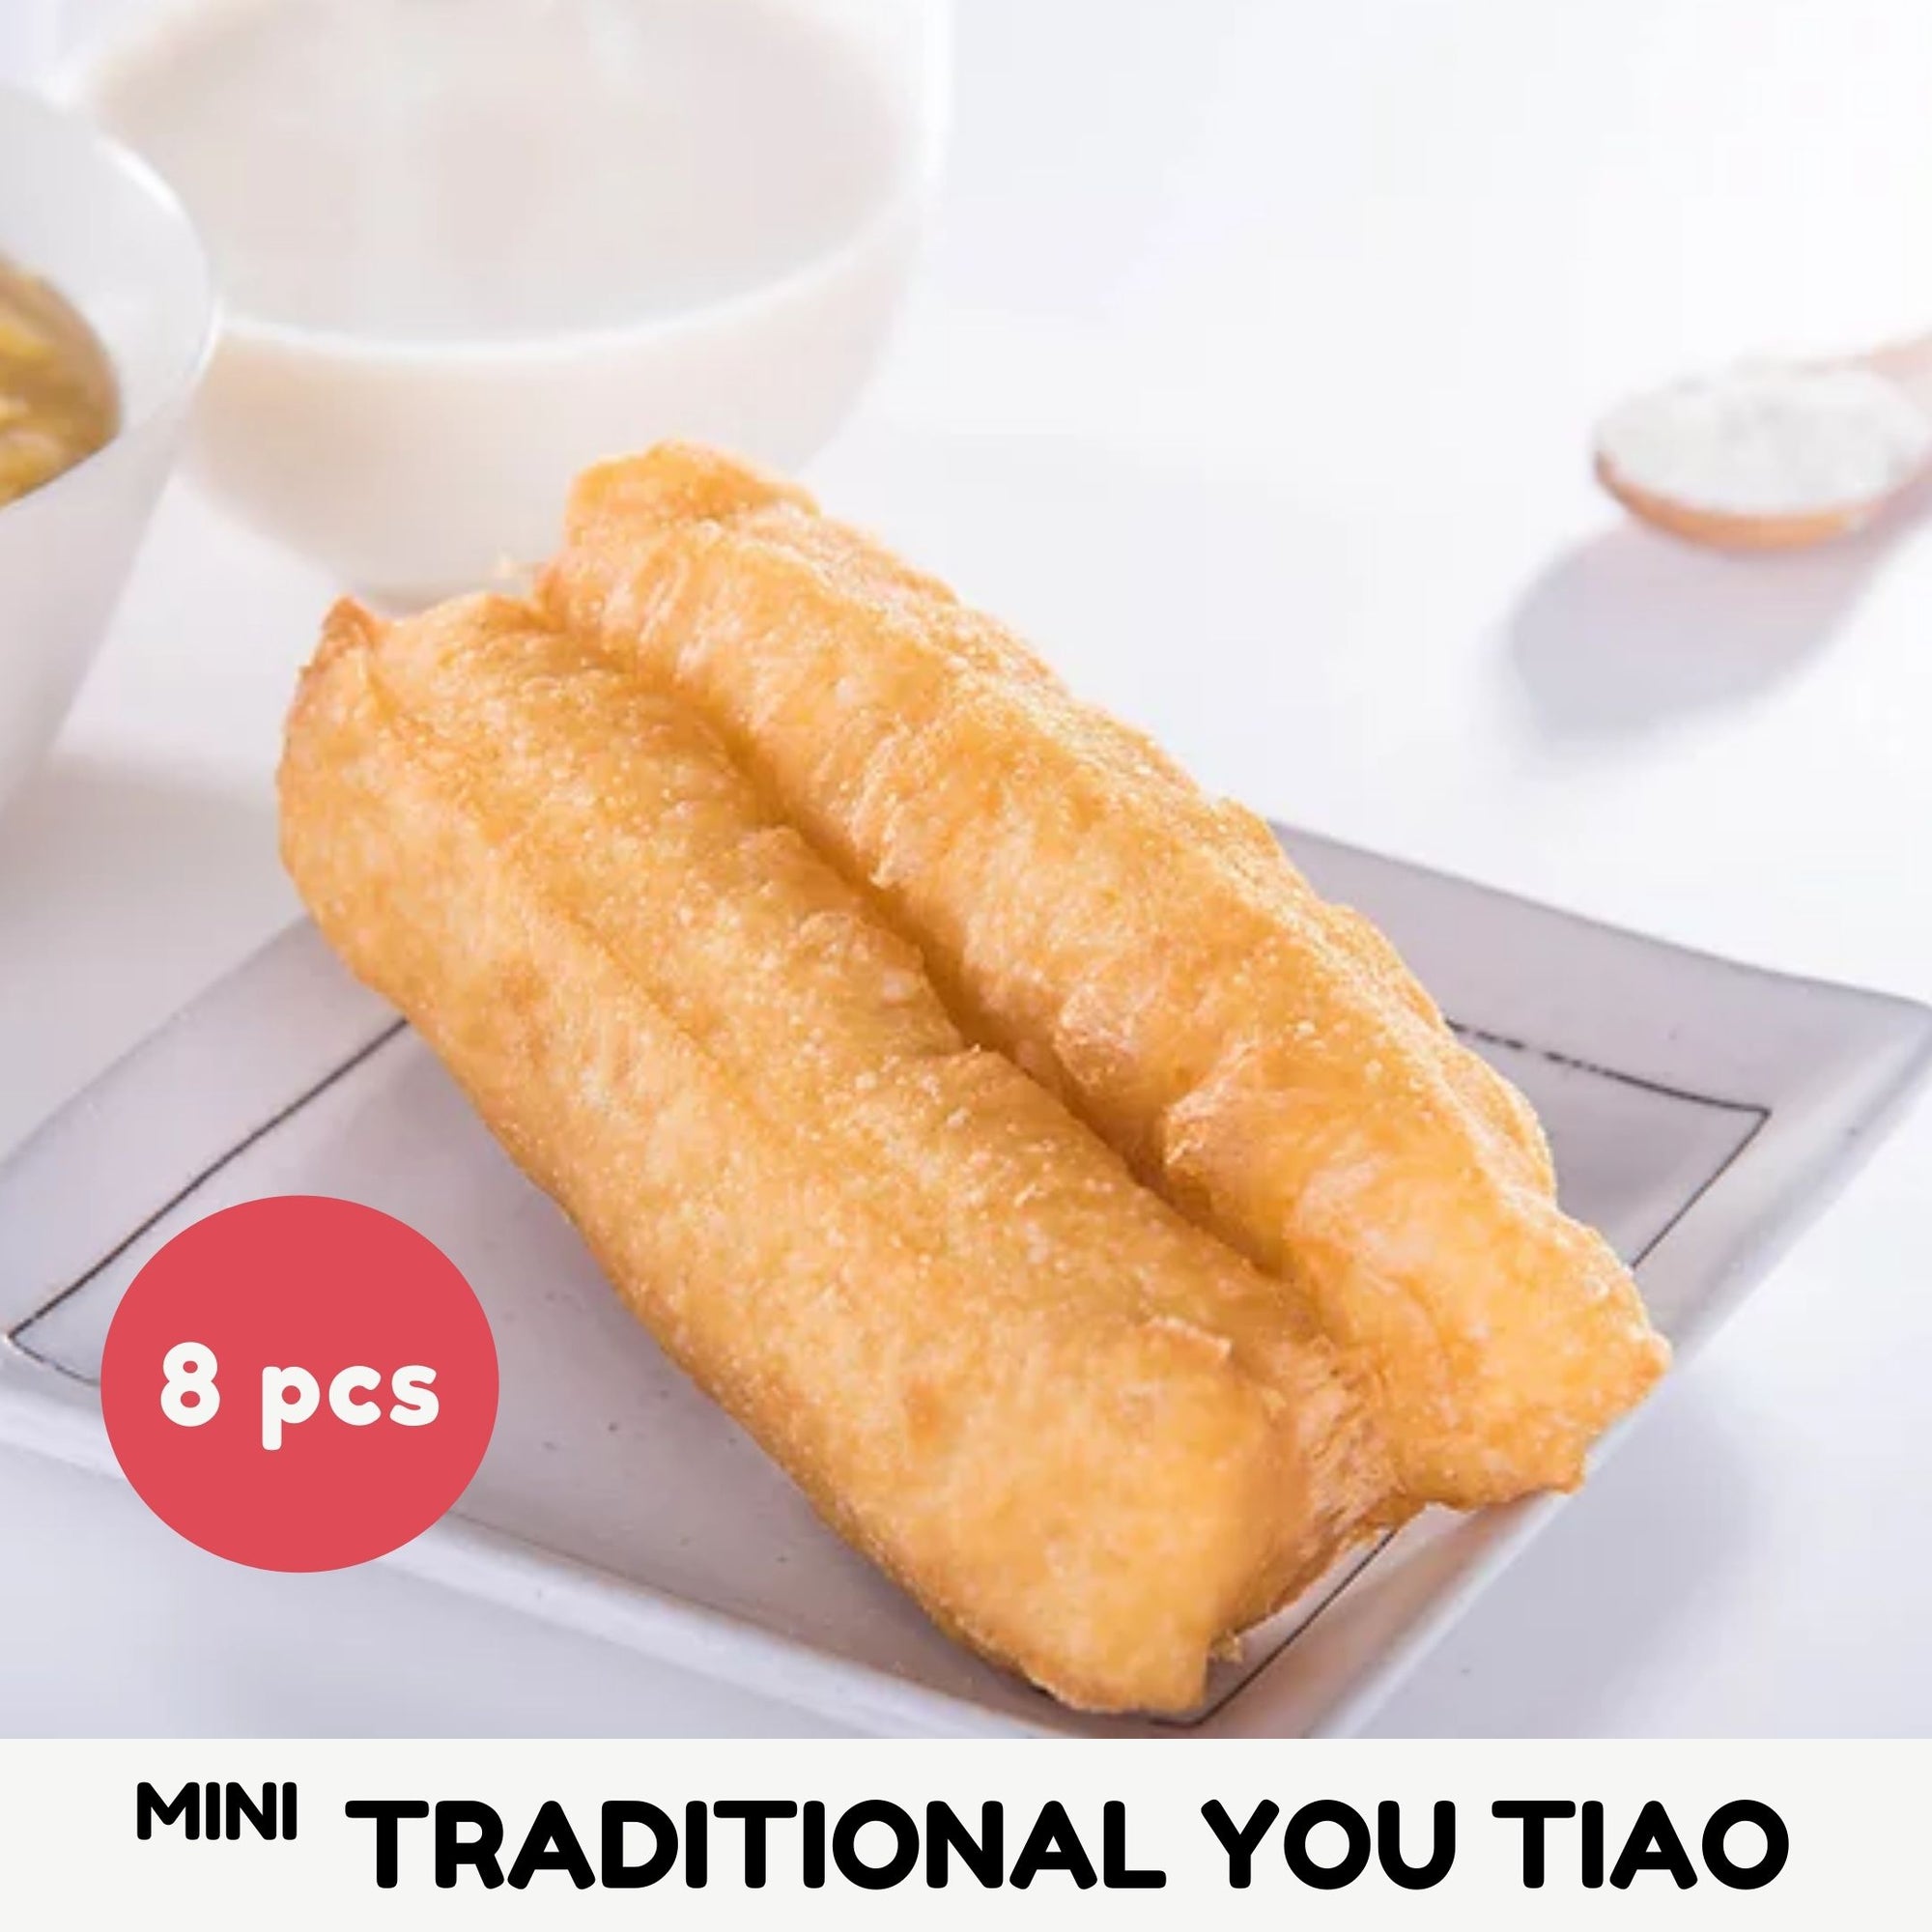 Traditional You Tiao (Mini)